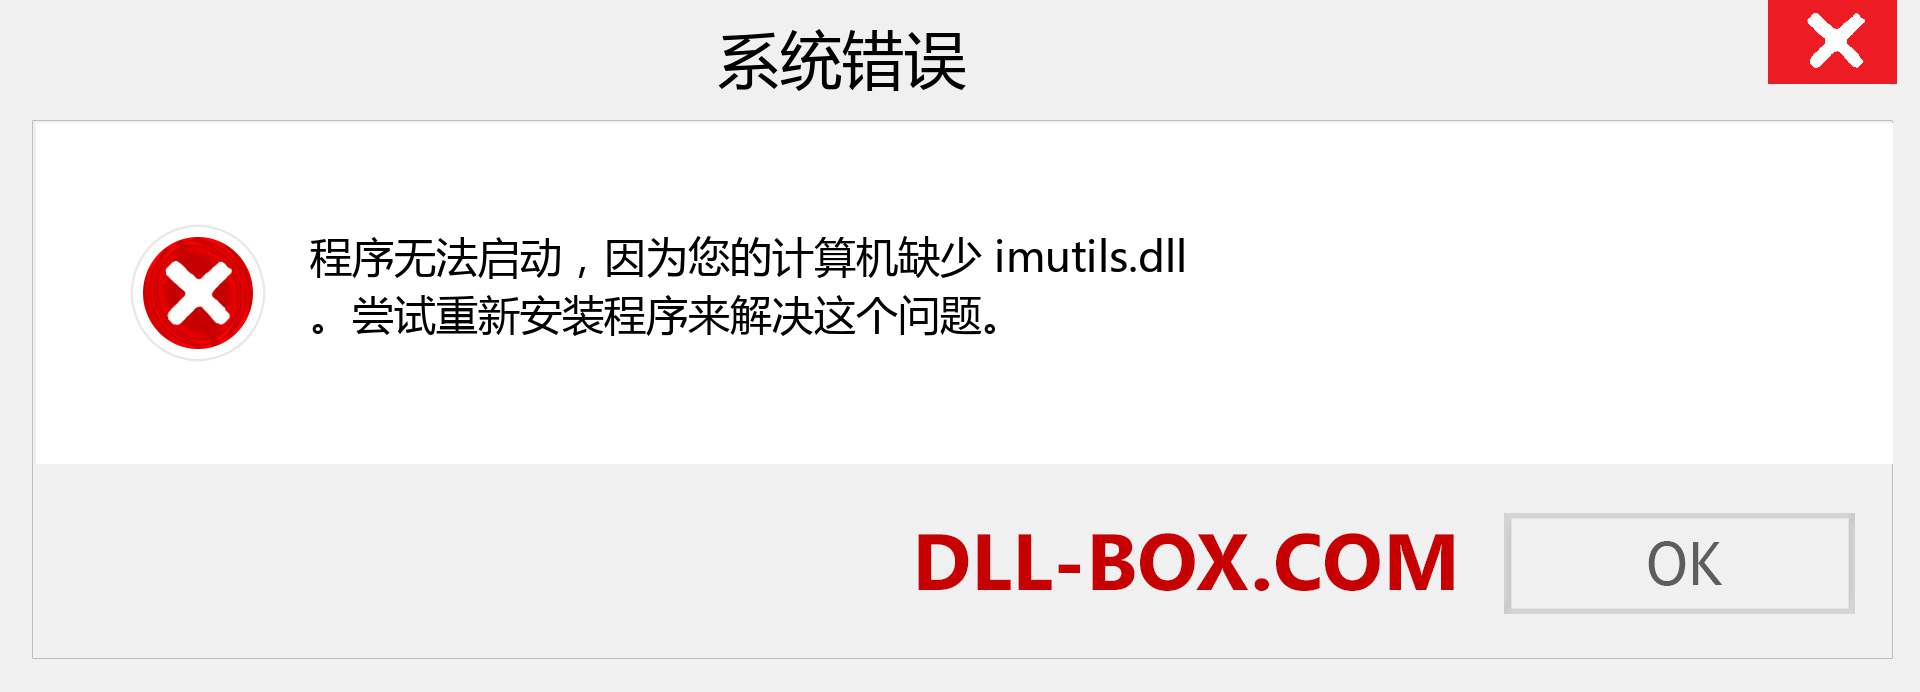 imutils.dll 文件丢失？。 适用于 Windows 7、8、10 的下载 - 修复 Windows、照片、图像上的 imutils dll 丢失错误